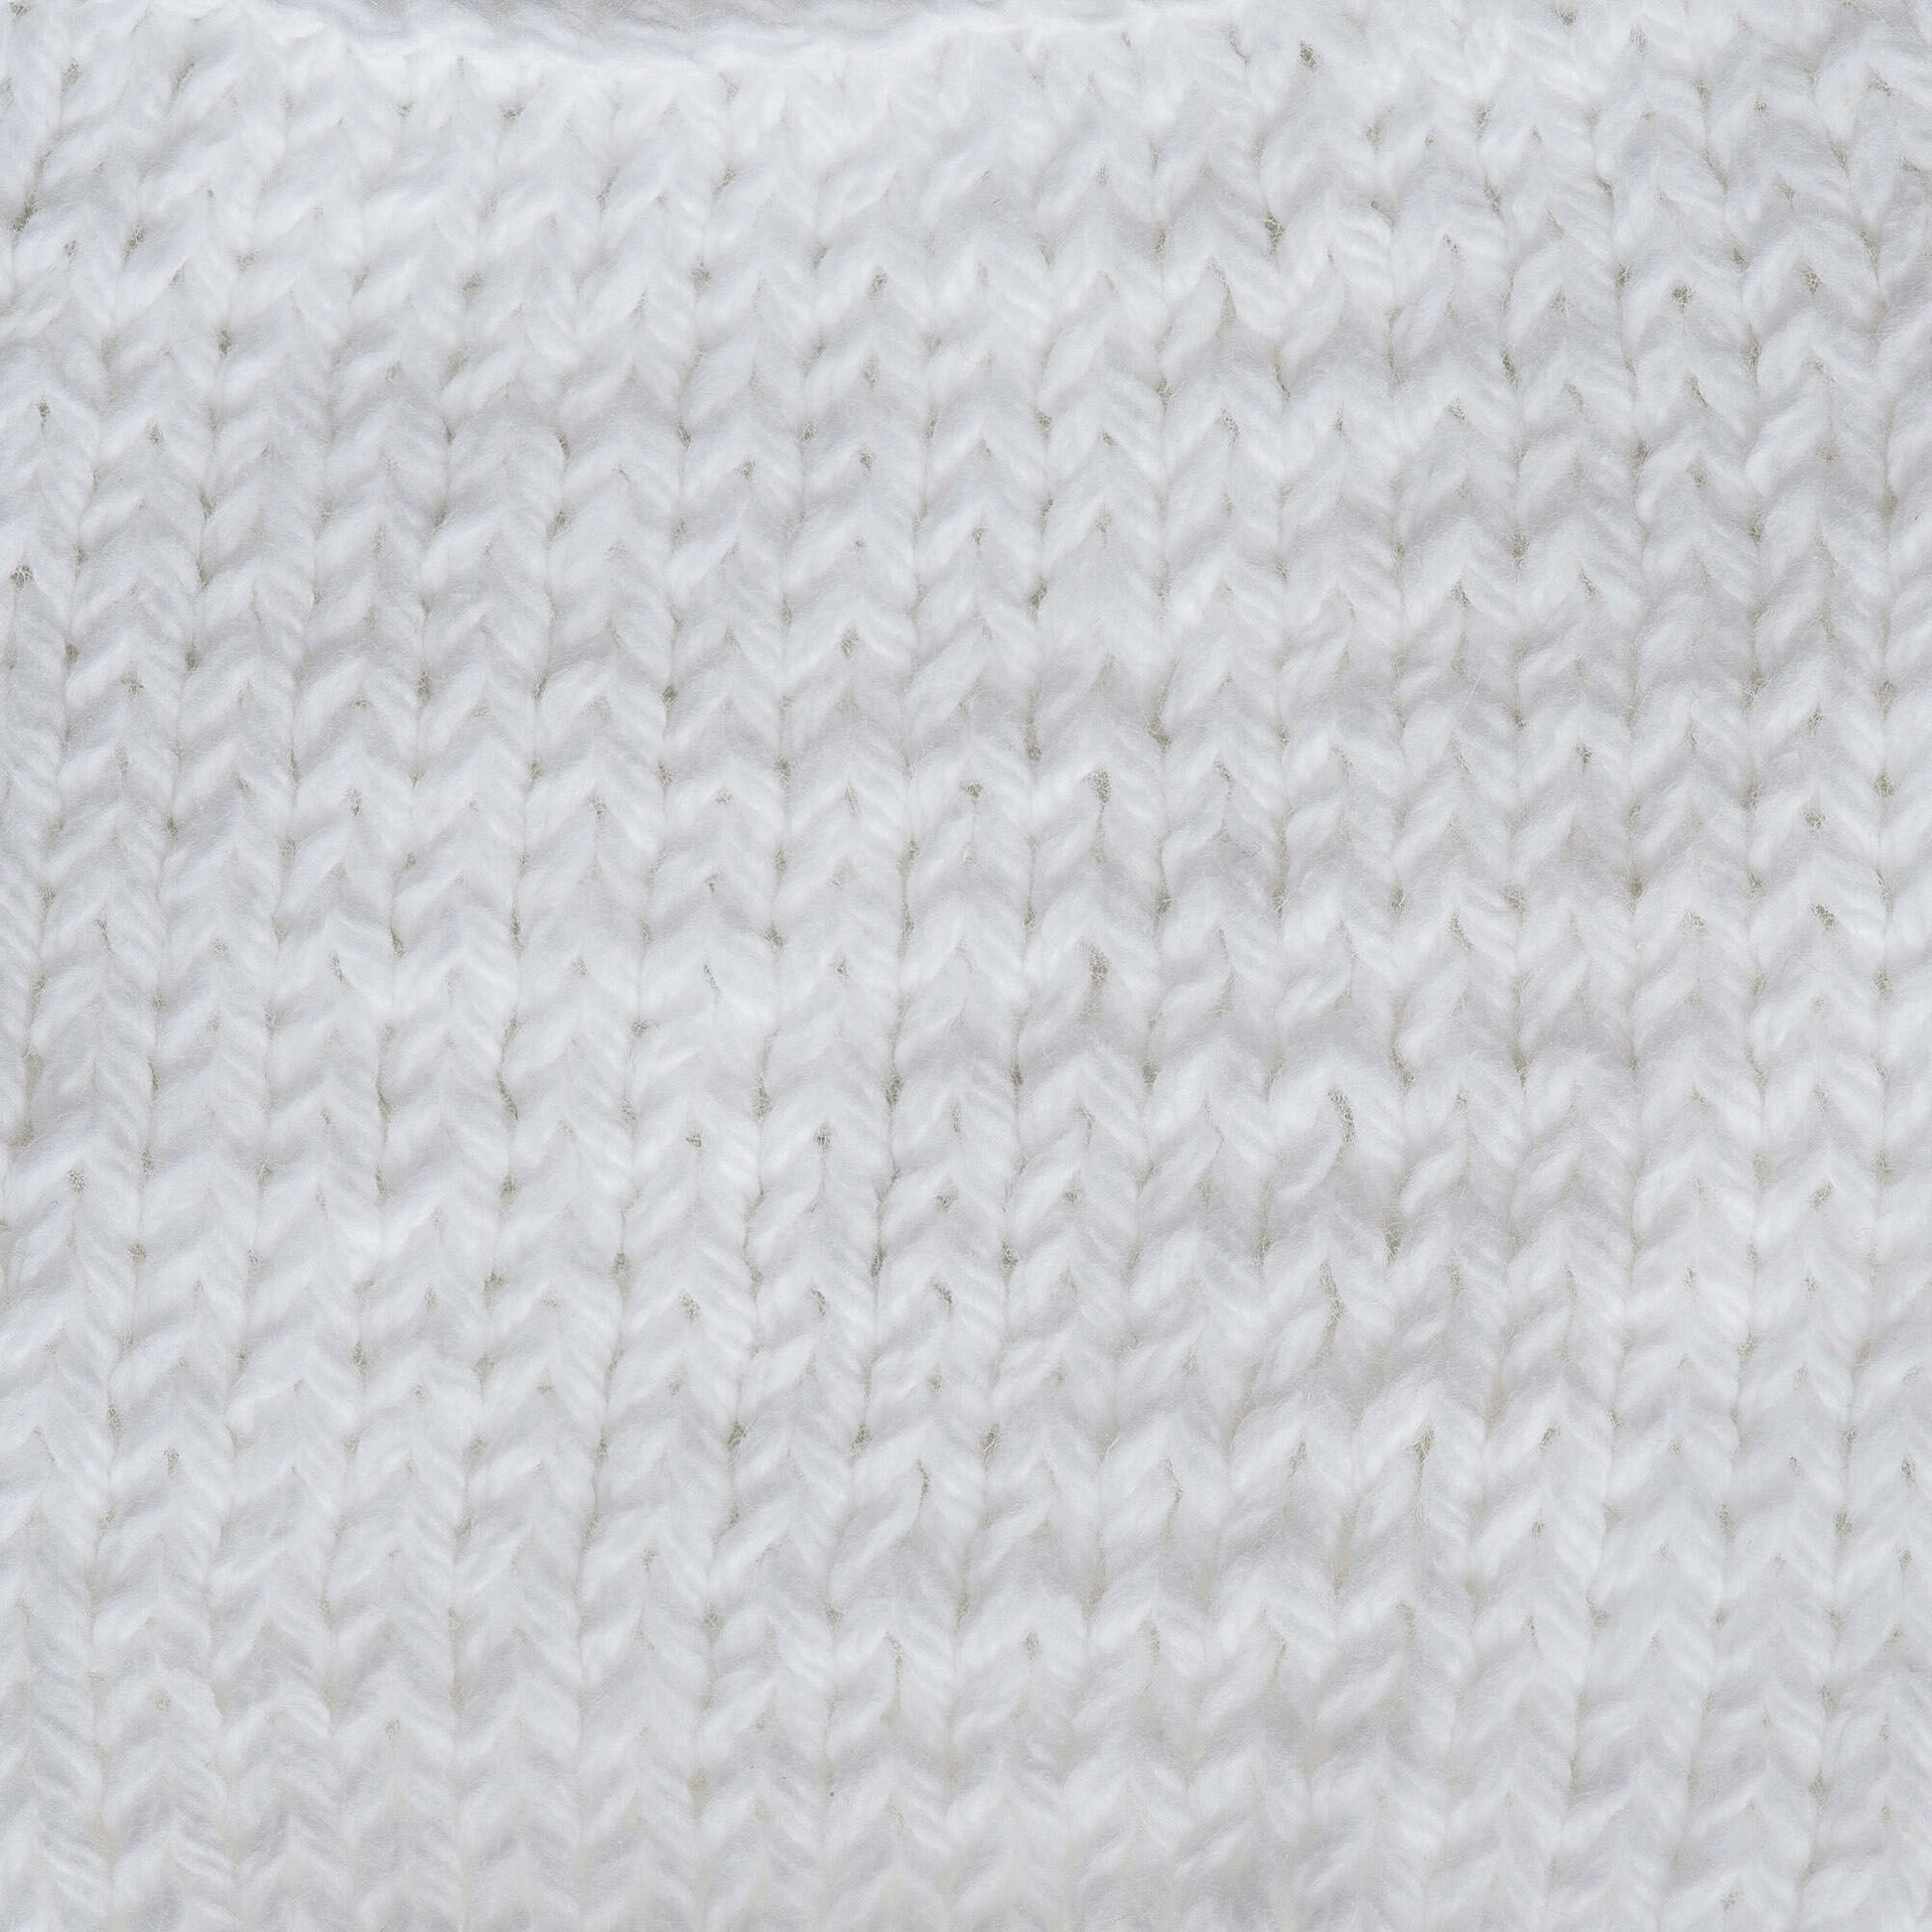 Lily Sugar'N Cream Ecru Yarn - 6 Pack of 71g/2.5oz - Cotton - 4 Medium  (Worsted) - 120 Yards - Knitting/Crochet